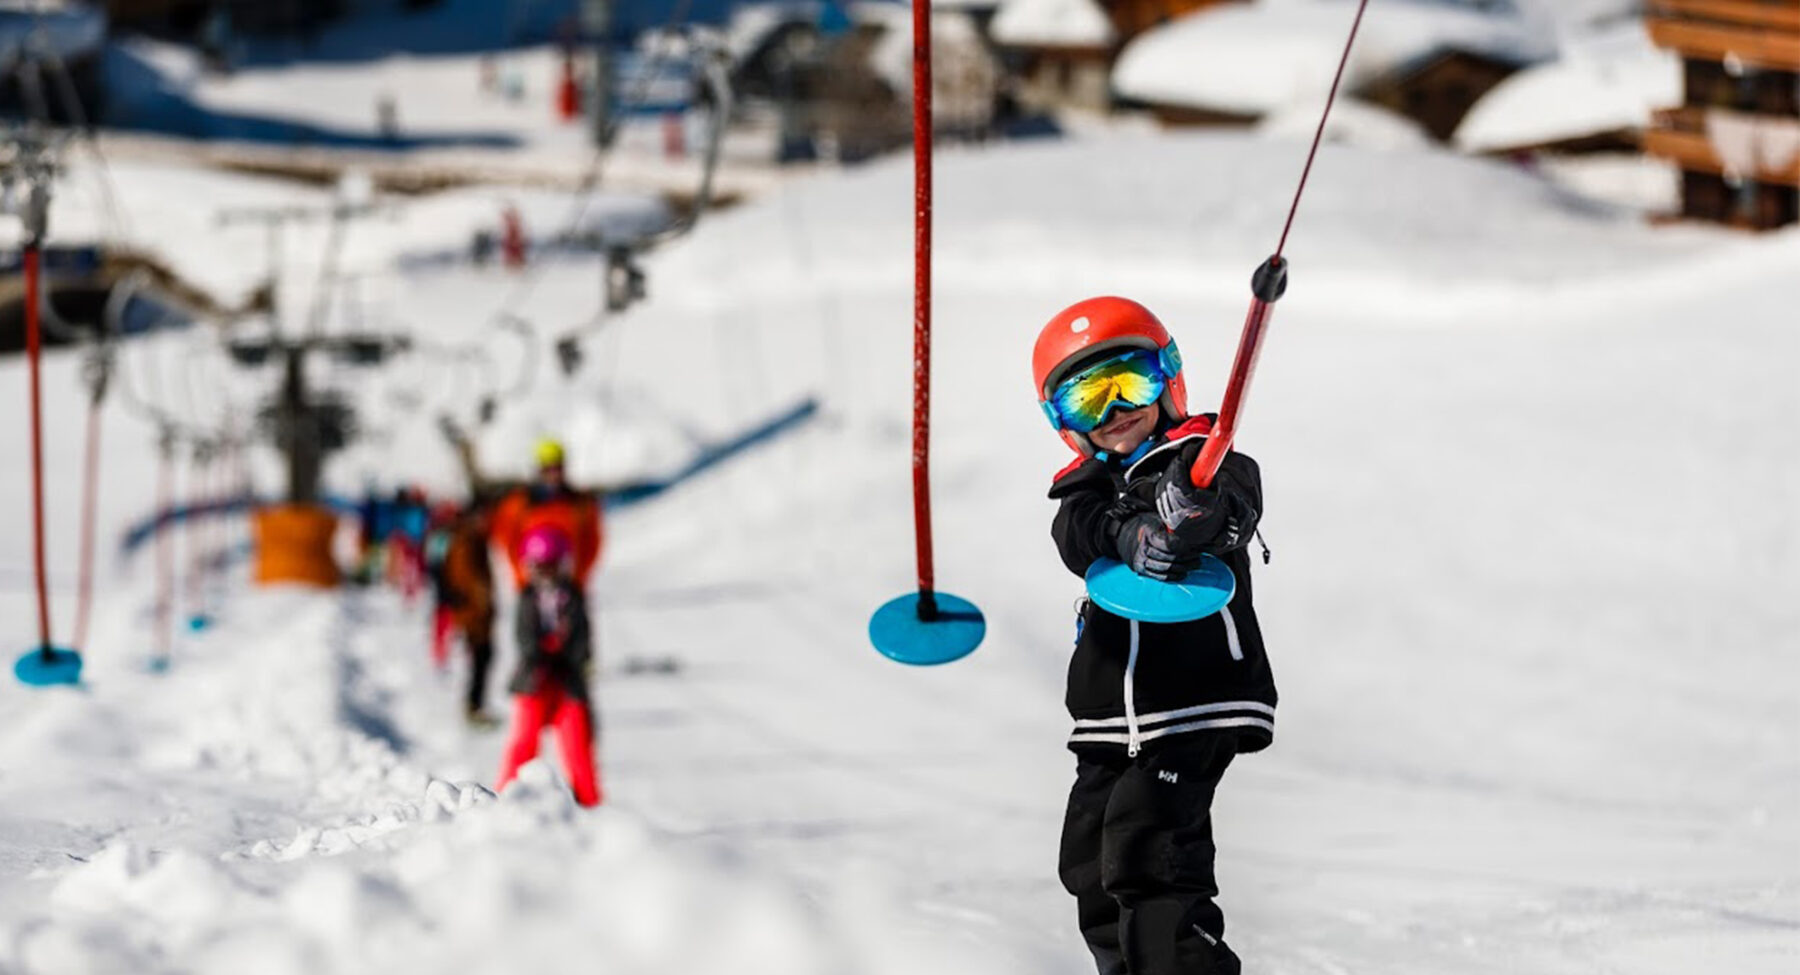 A child on a button ski lift